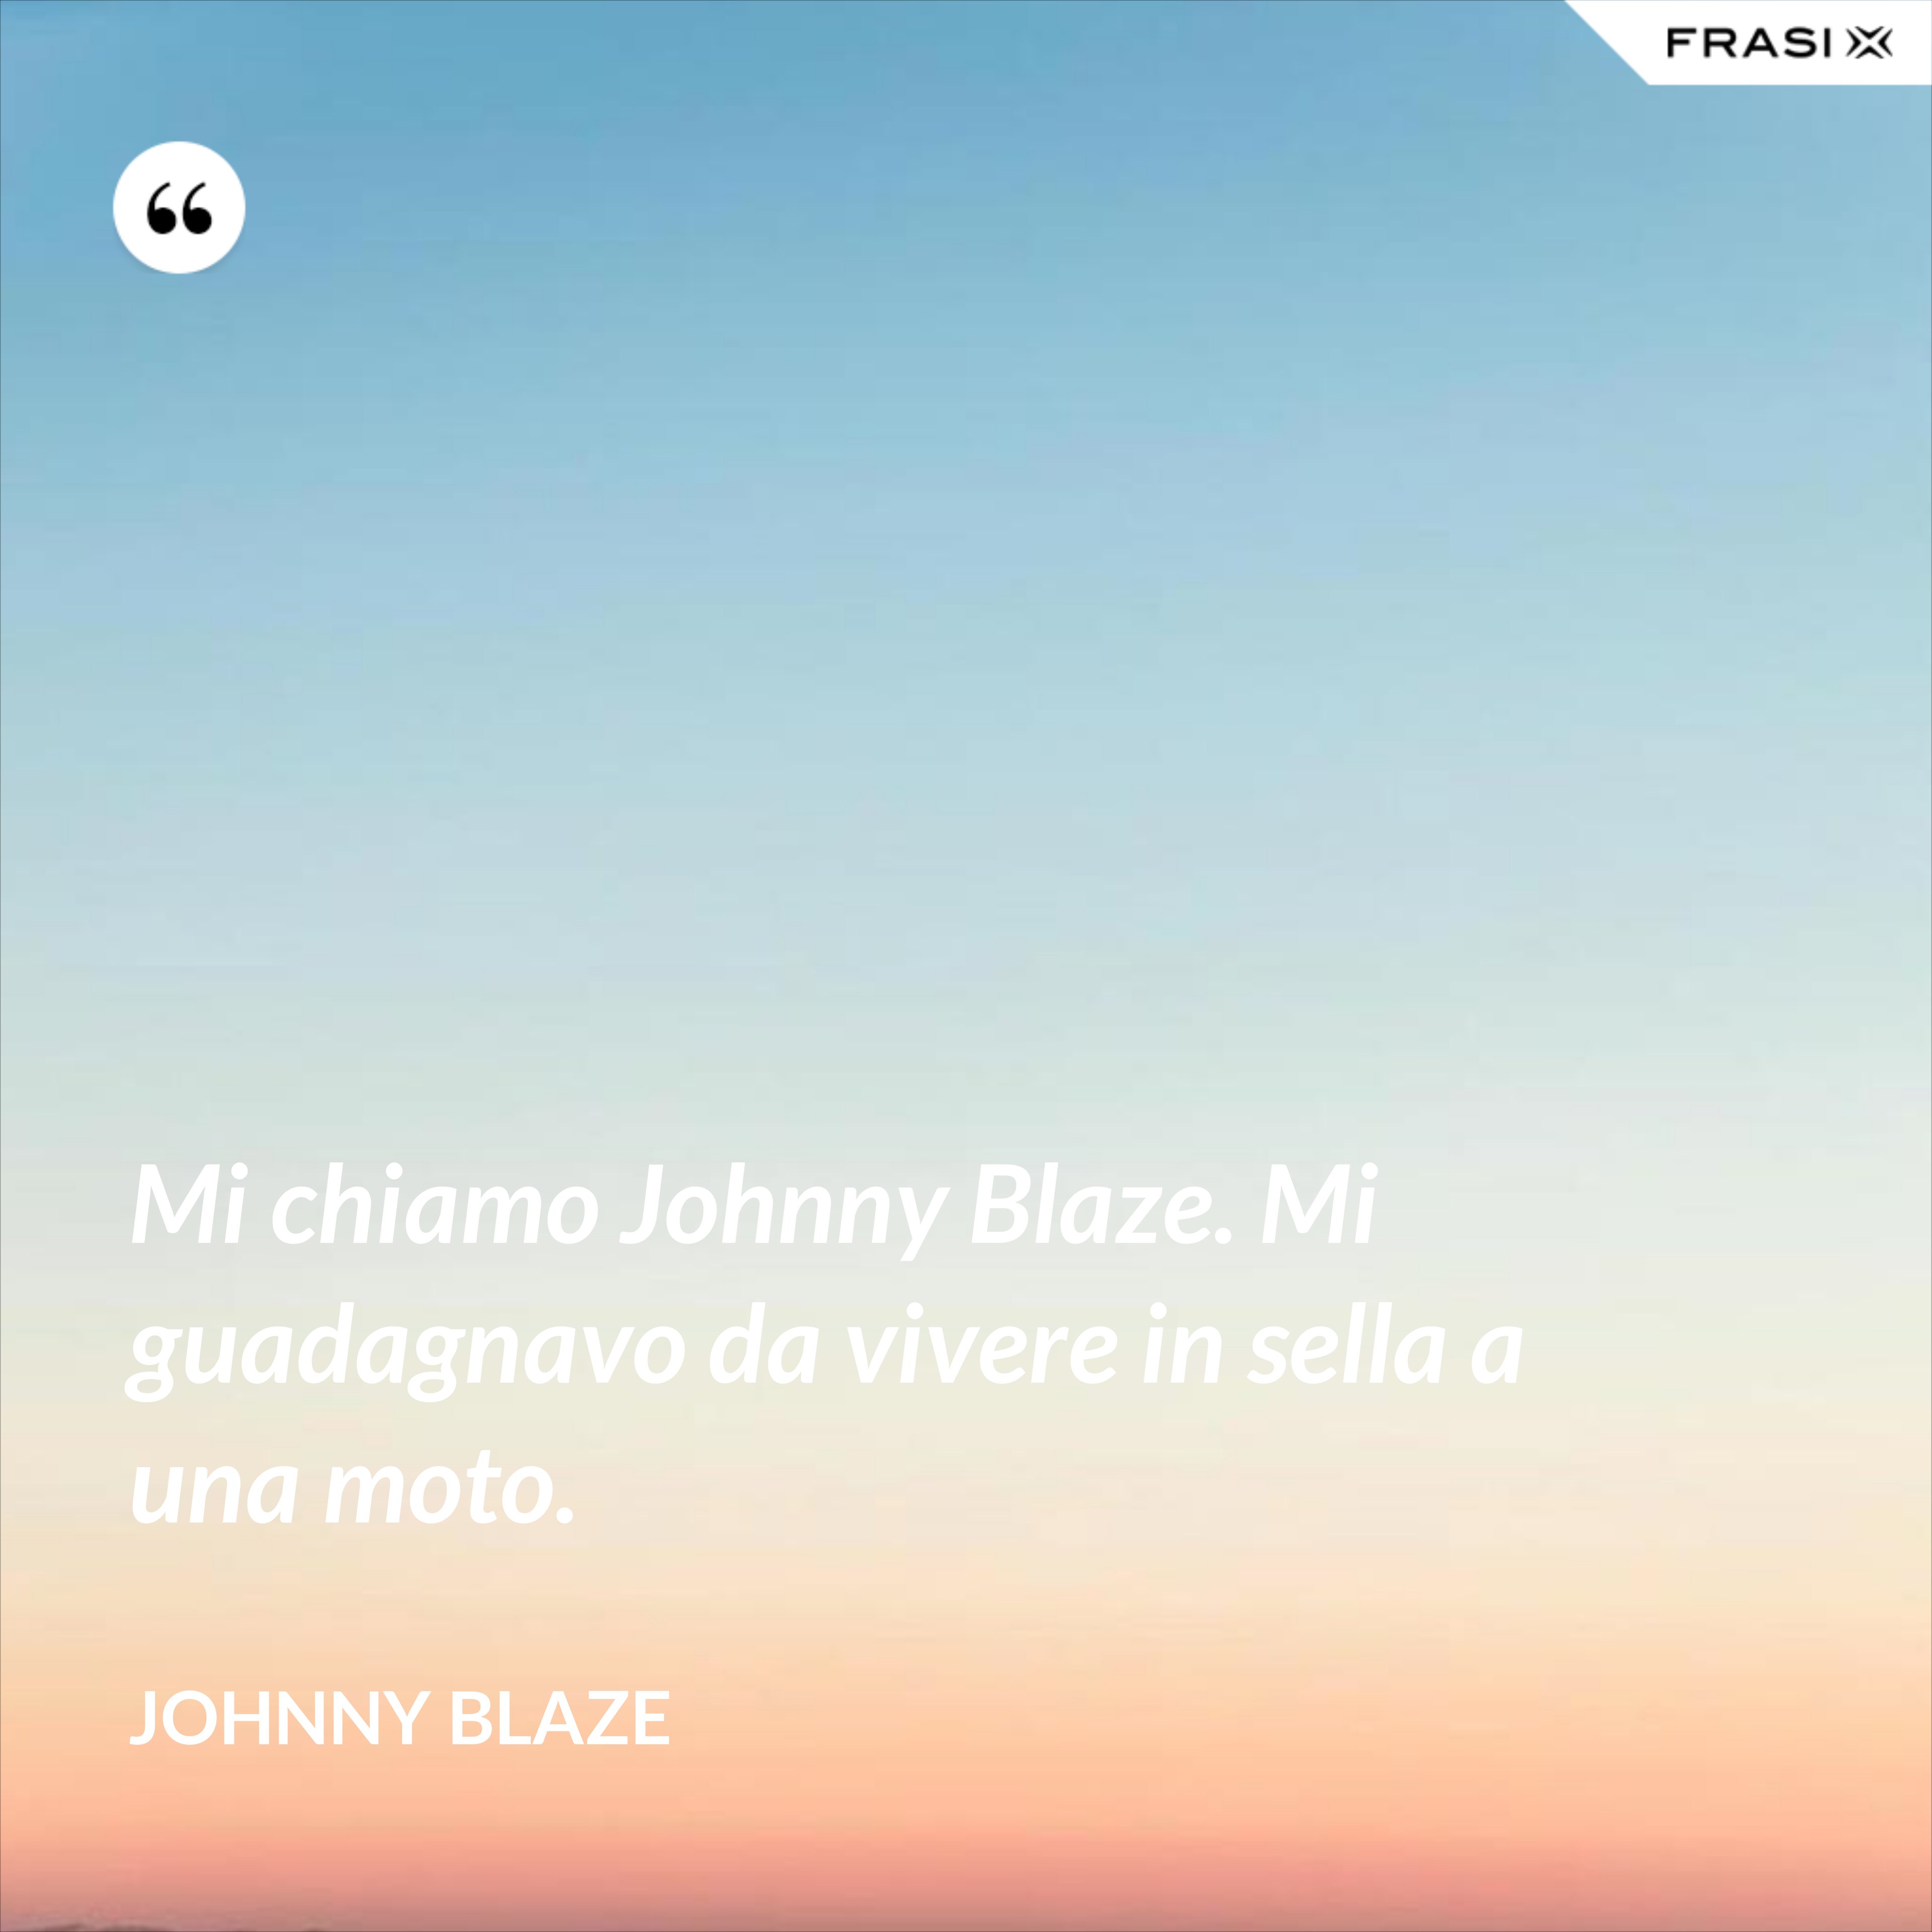 Mi chiamo Johnny Blaze. Mi guadagnavo da vivere in sella a una moto. - Johnny Blaze